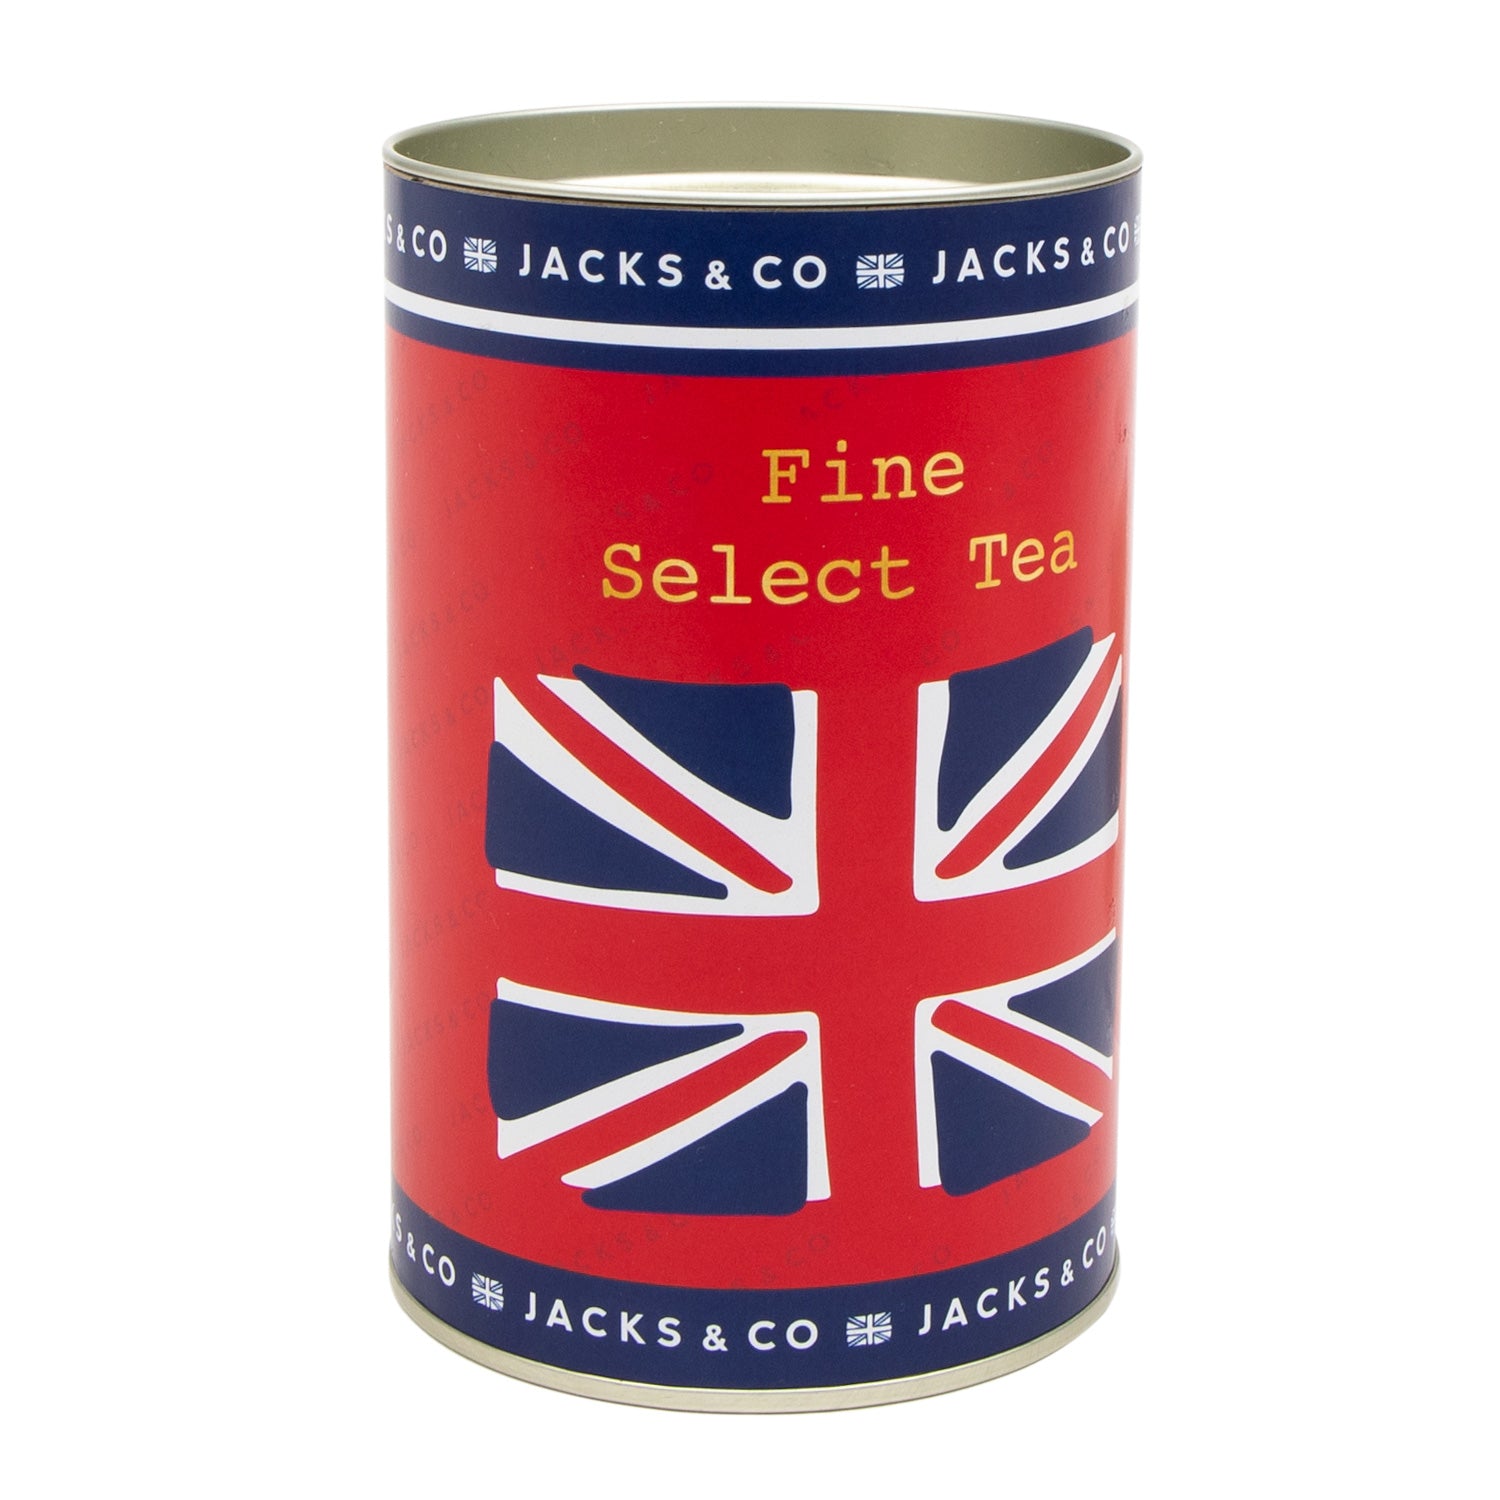 Jacks & Co Union Jack Fine Select Tea 1